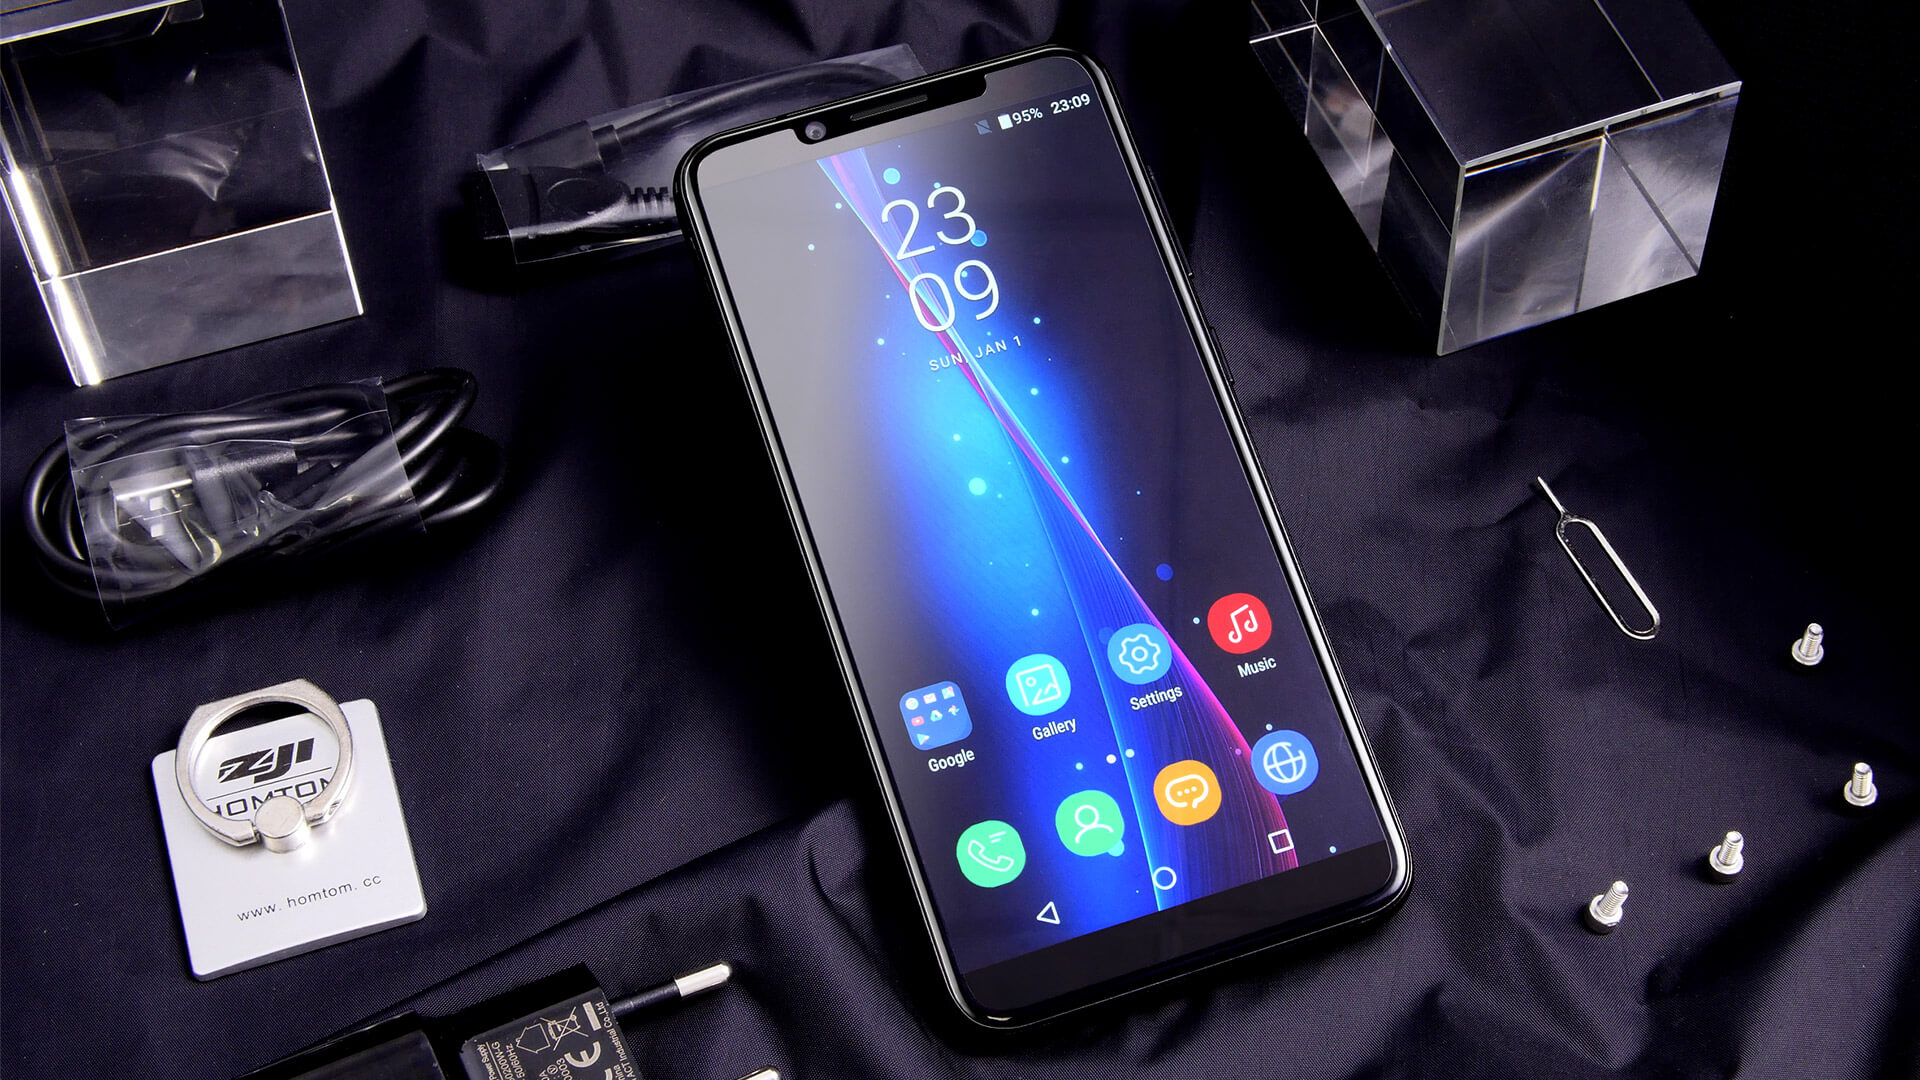 Китайский конкурент Galaxy S8 доступен со скидкой. Фото.